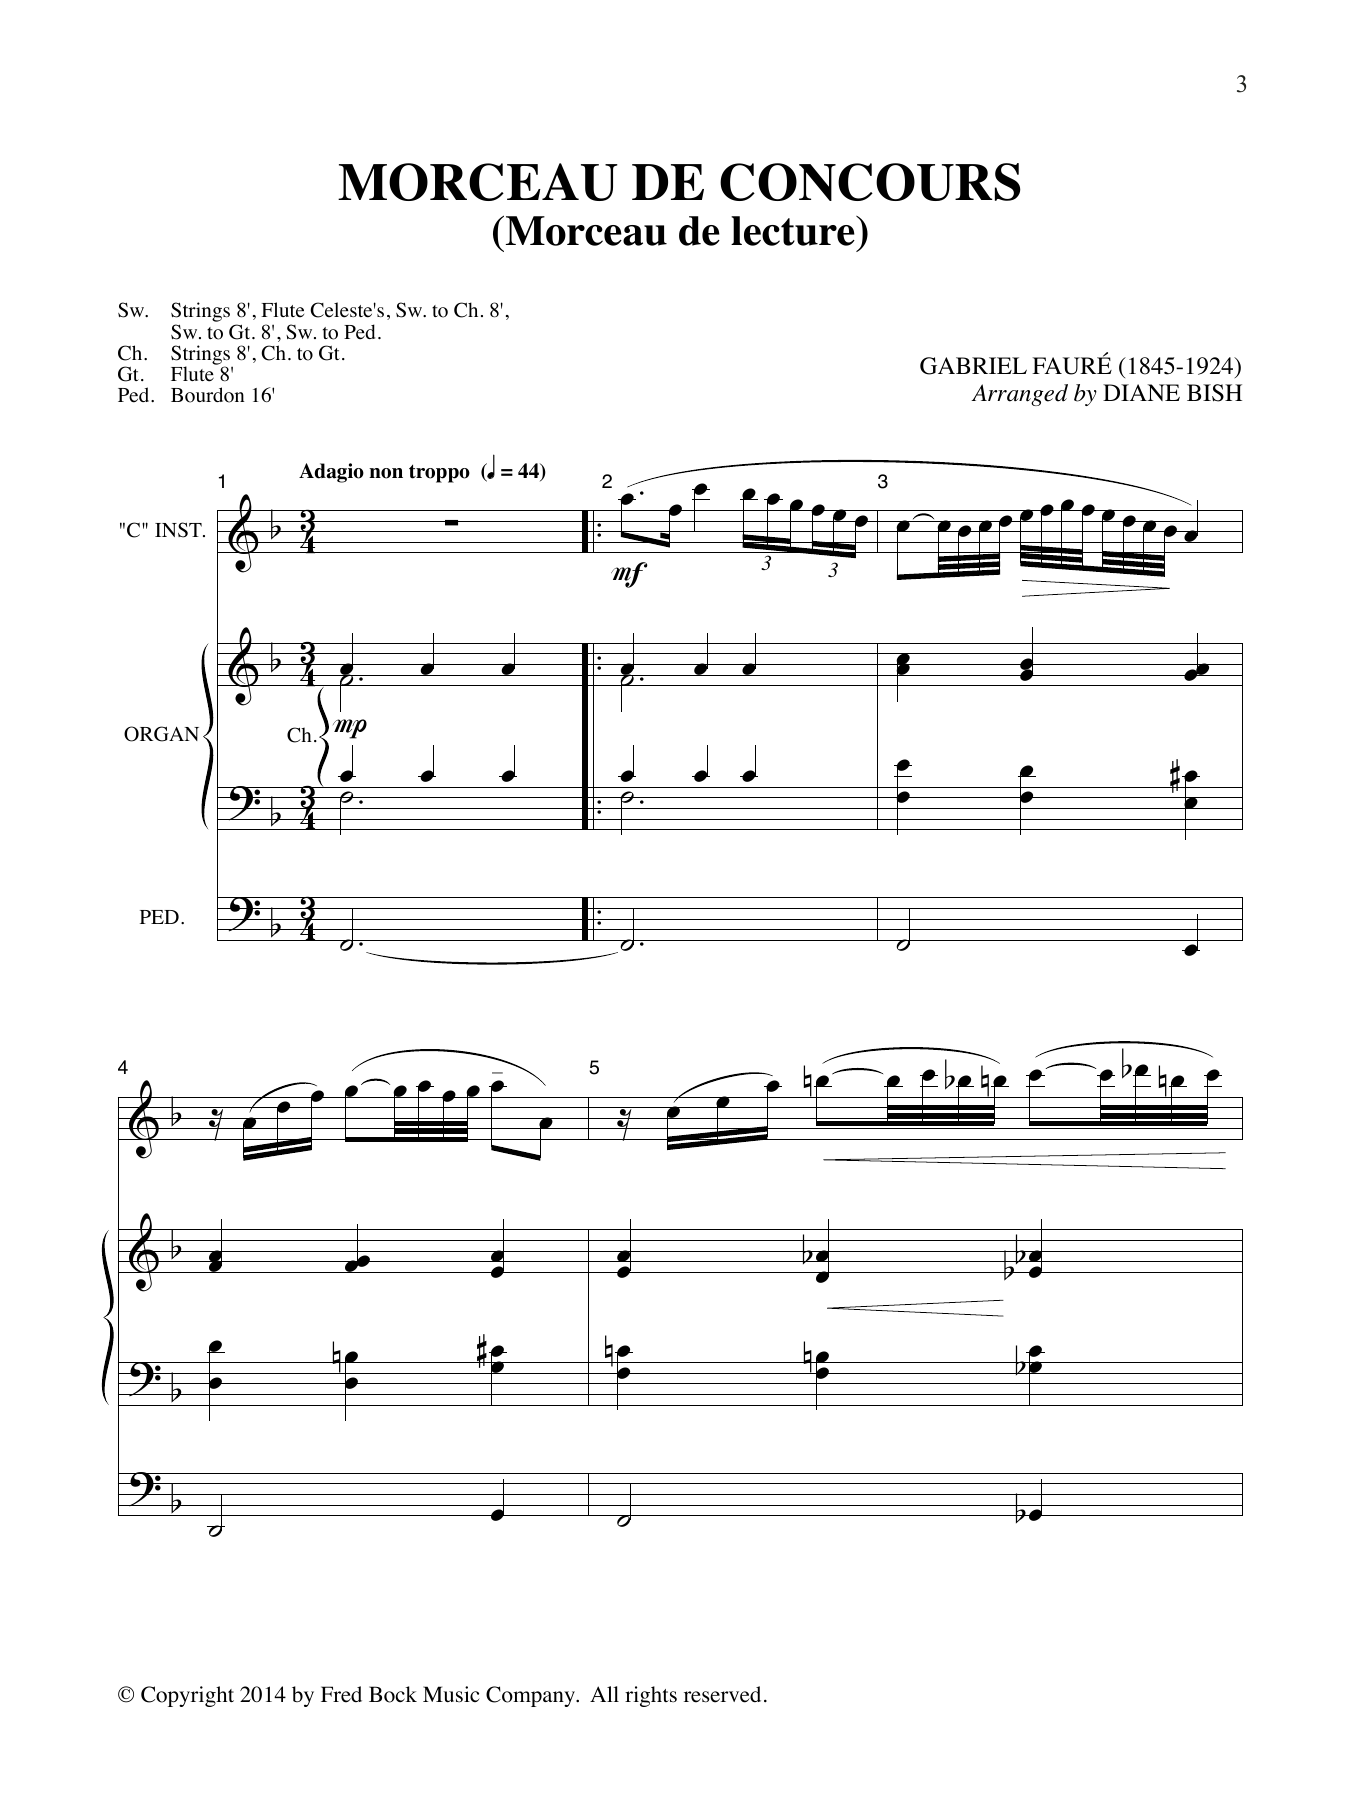 Download Gabriel Faure, Wolfgang Amadeus Moza Meditations (arr. Diane Bish) Sheet Music